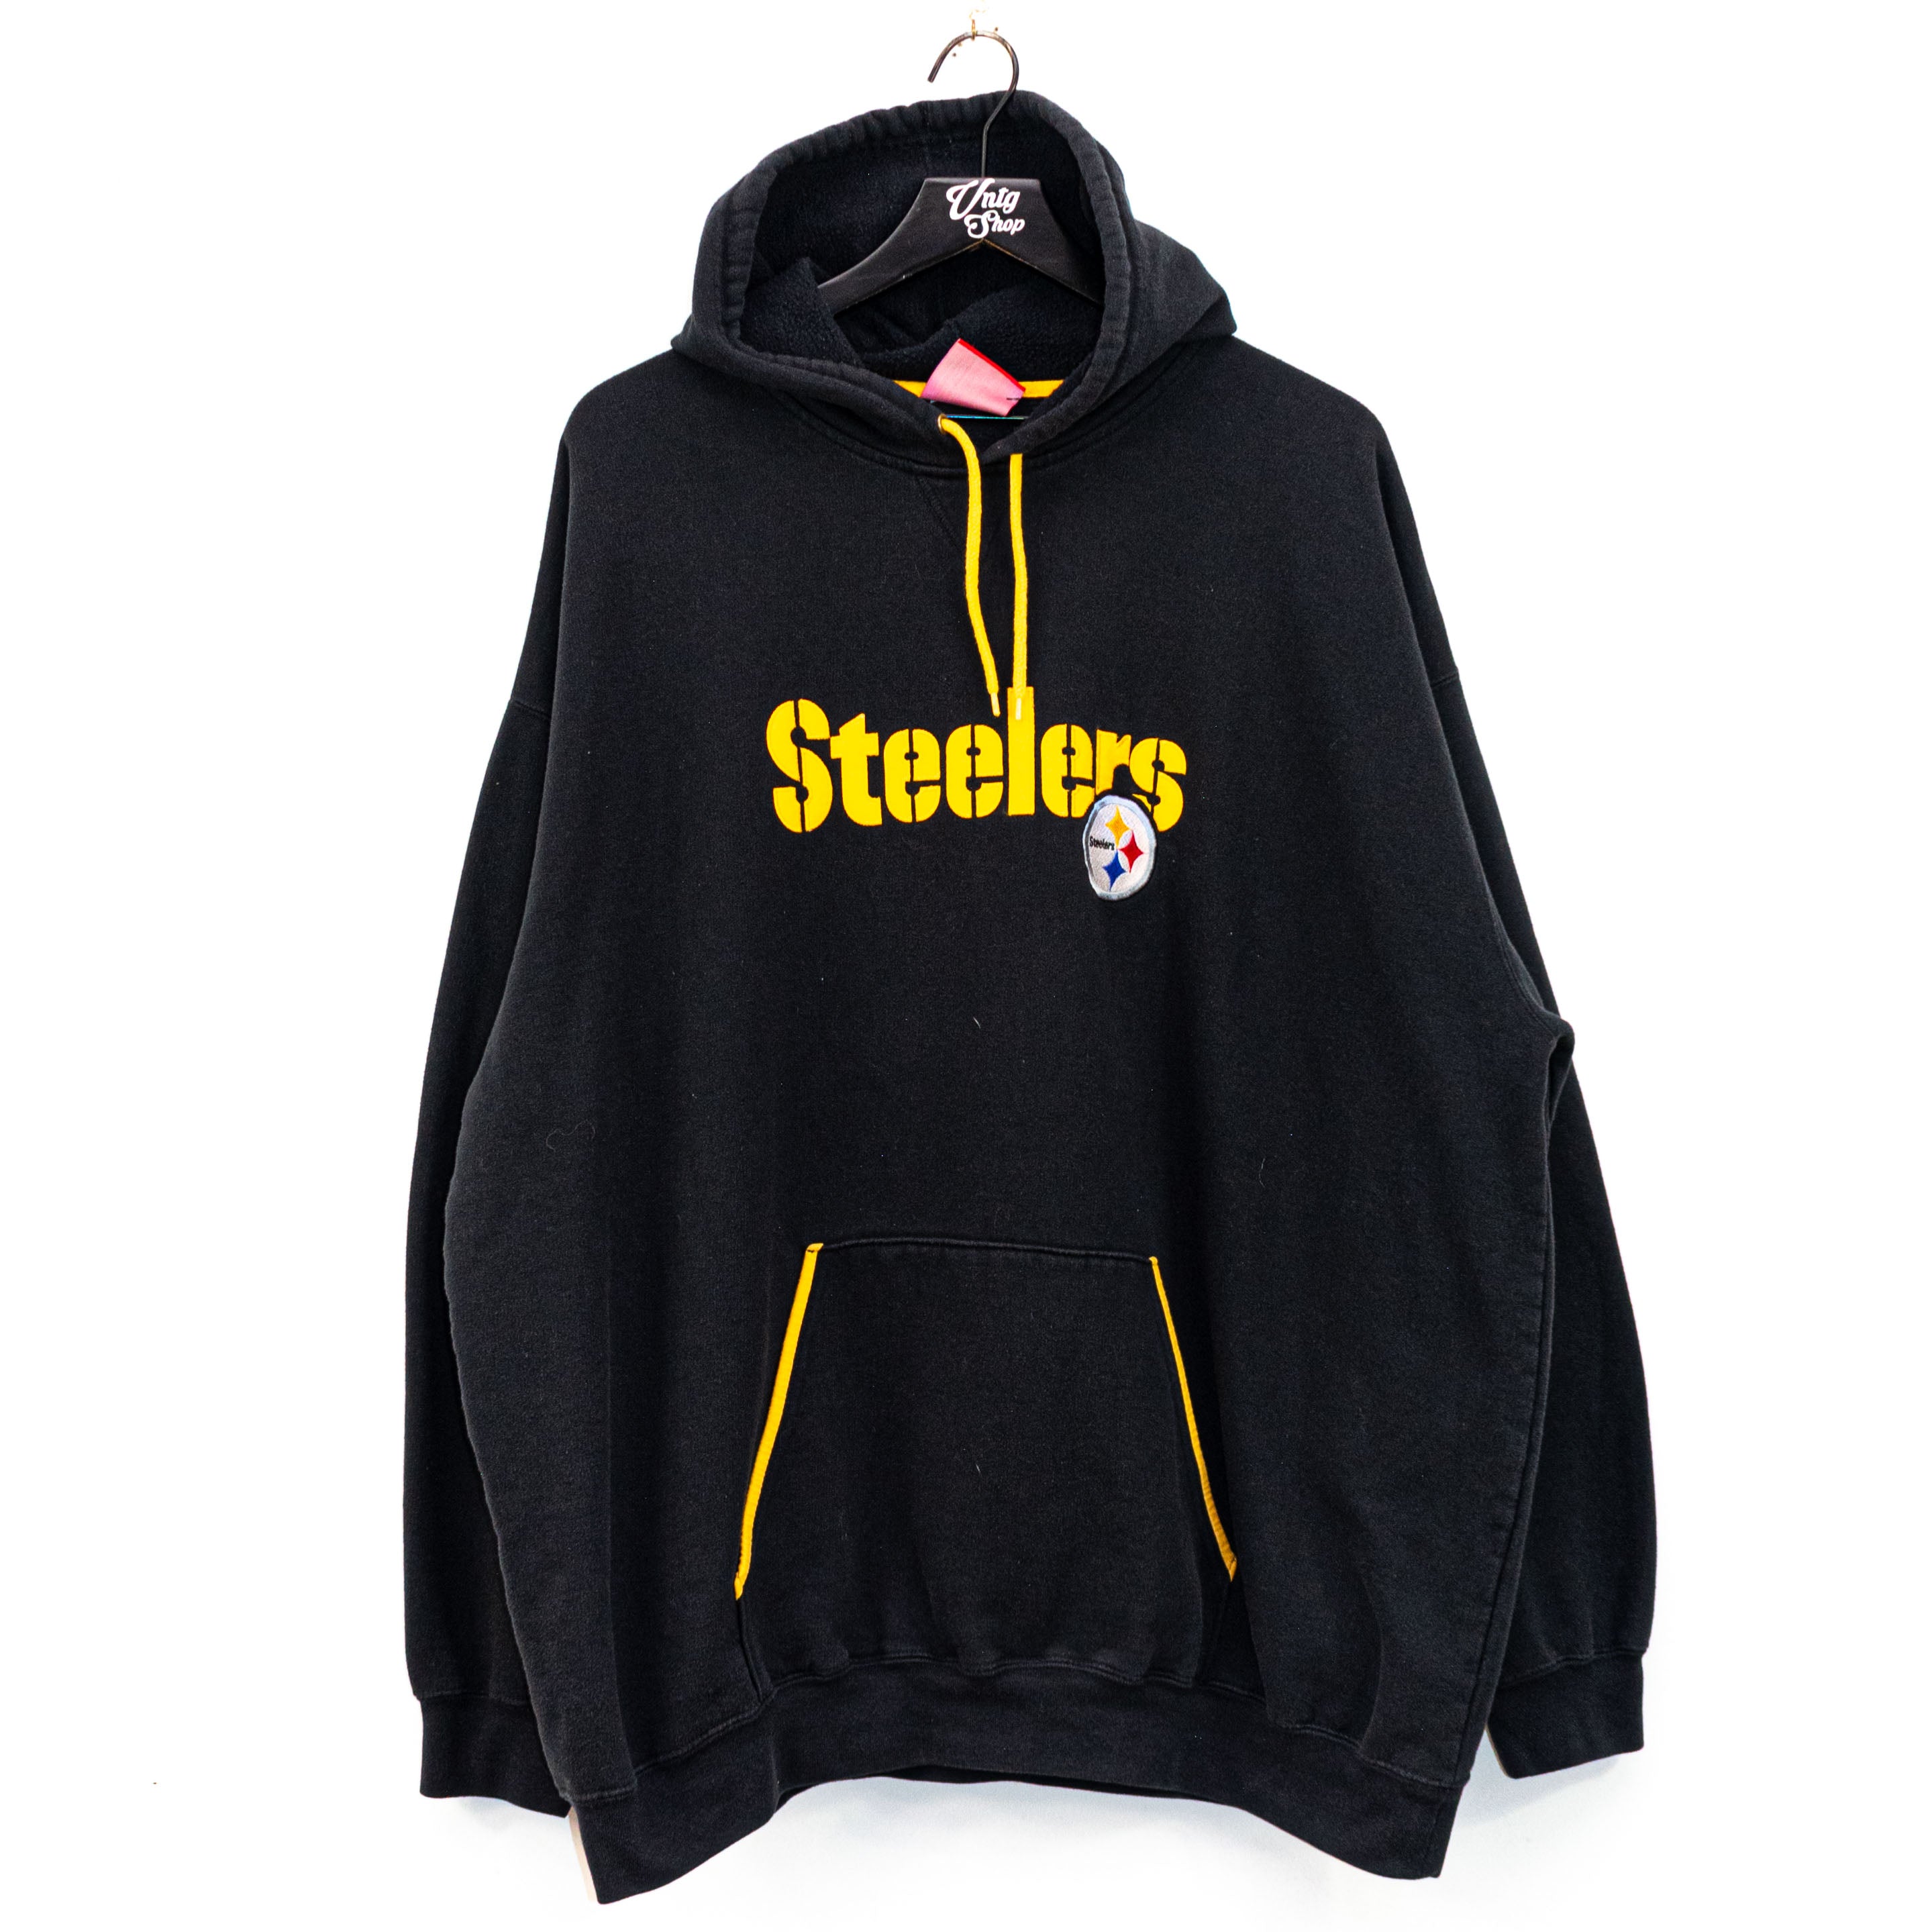 steelers retro hoodie